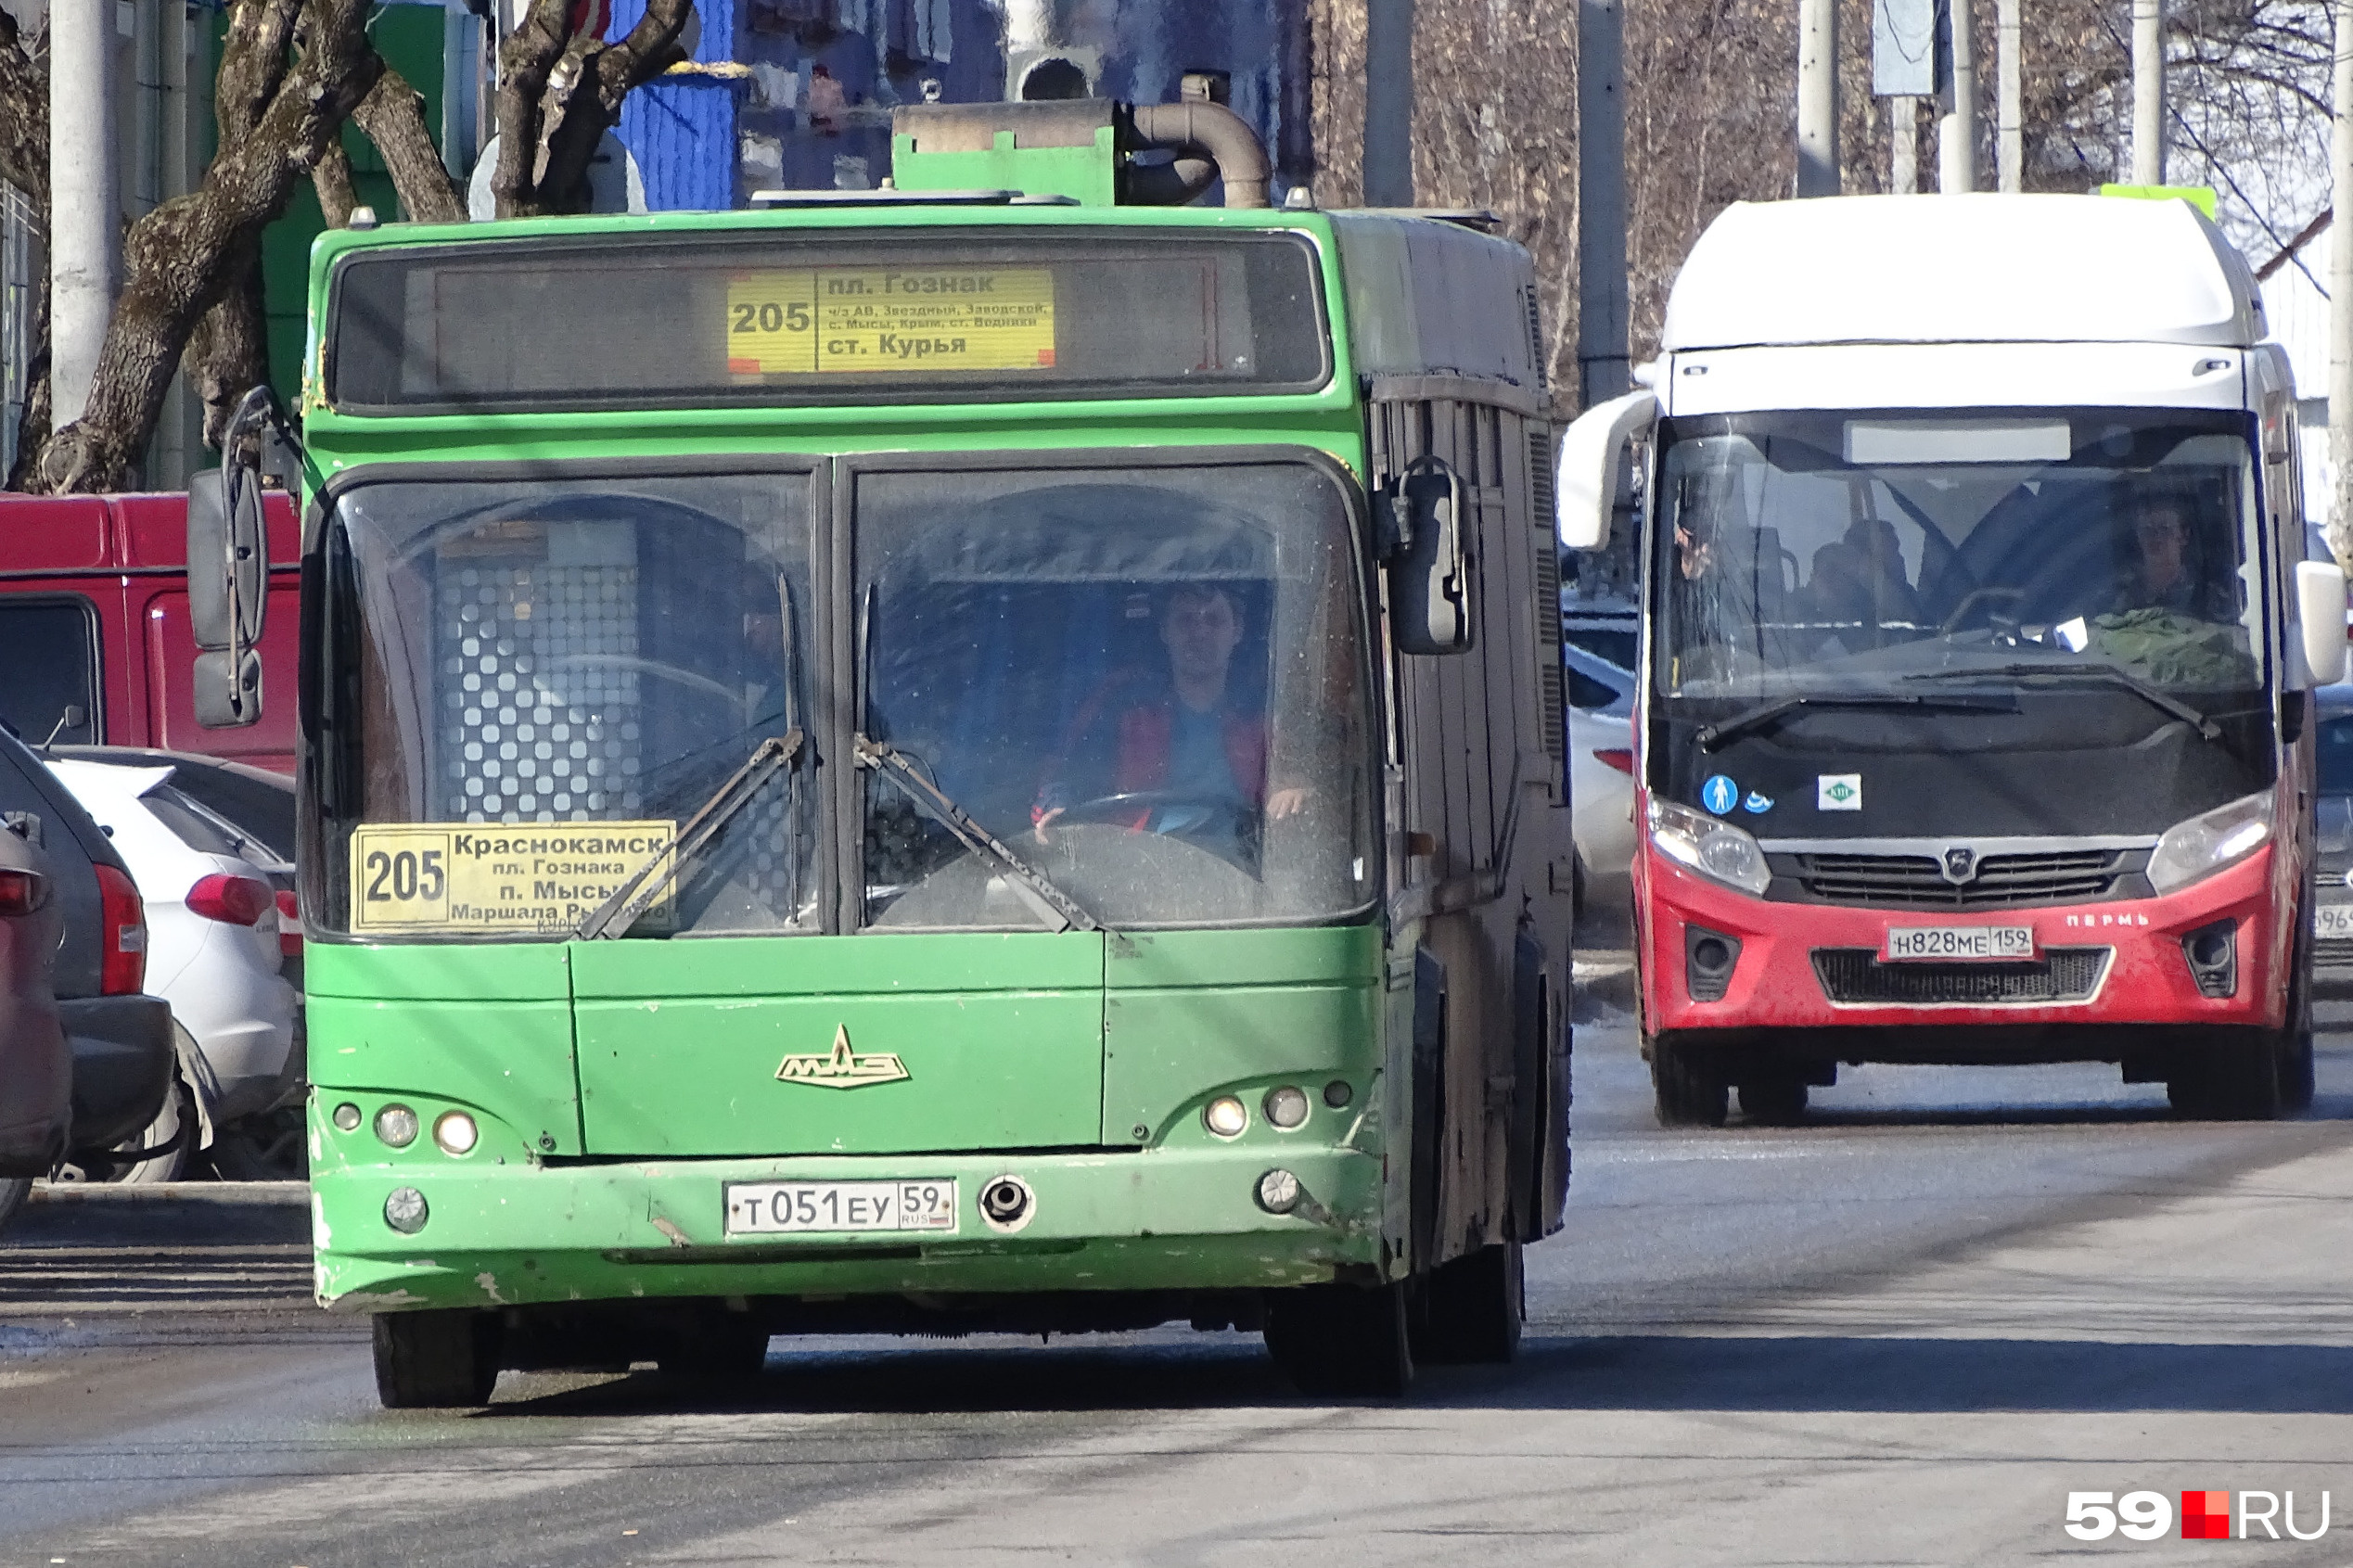 Автобус 205 пермь краснокамск. Новые автобусы. Новый перевозчик в Кургане.